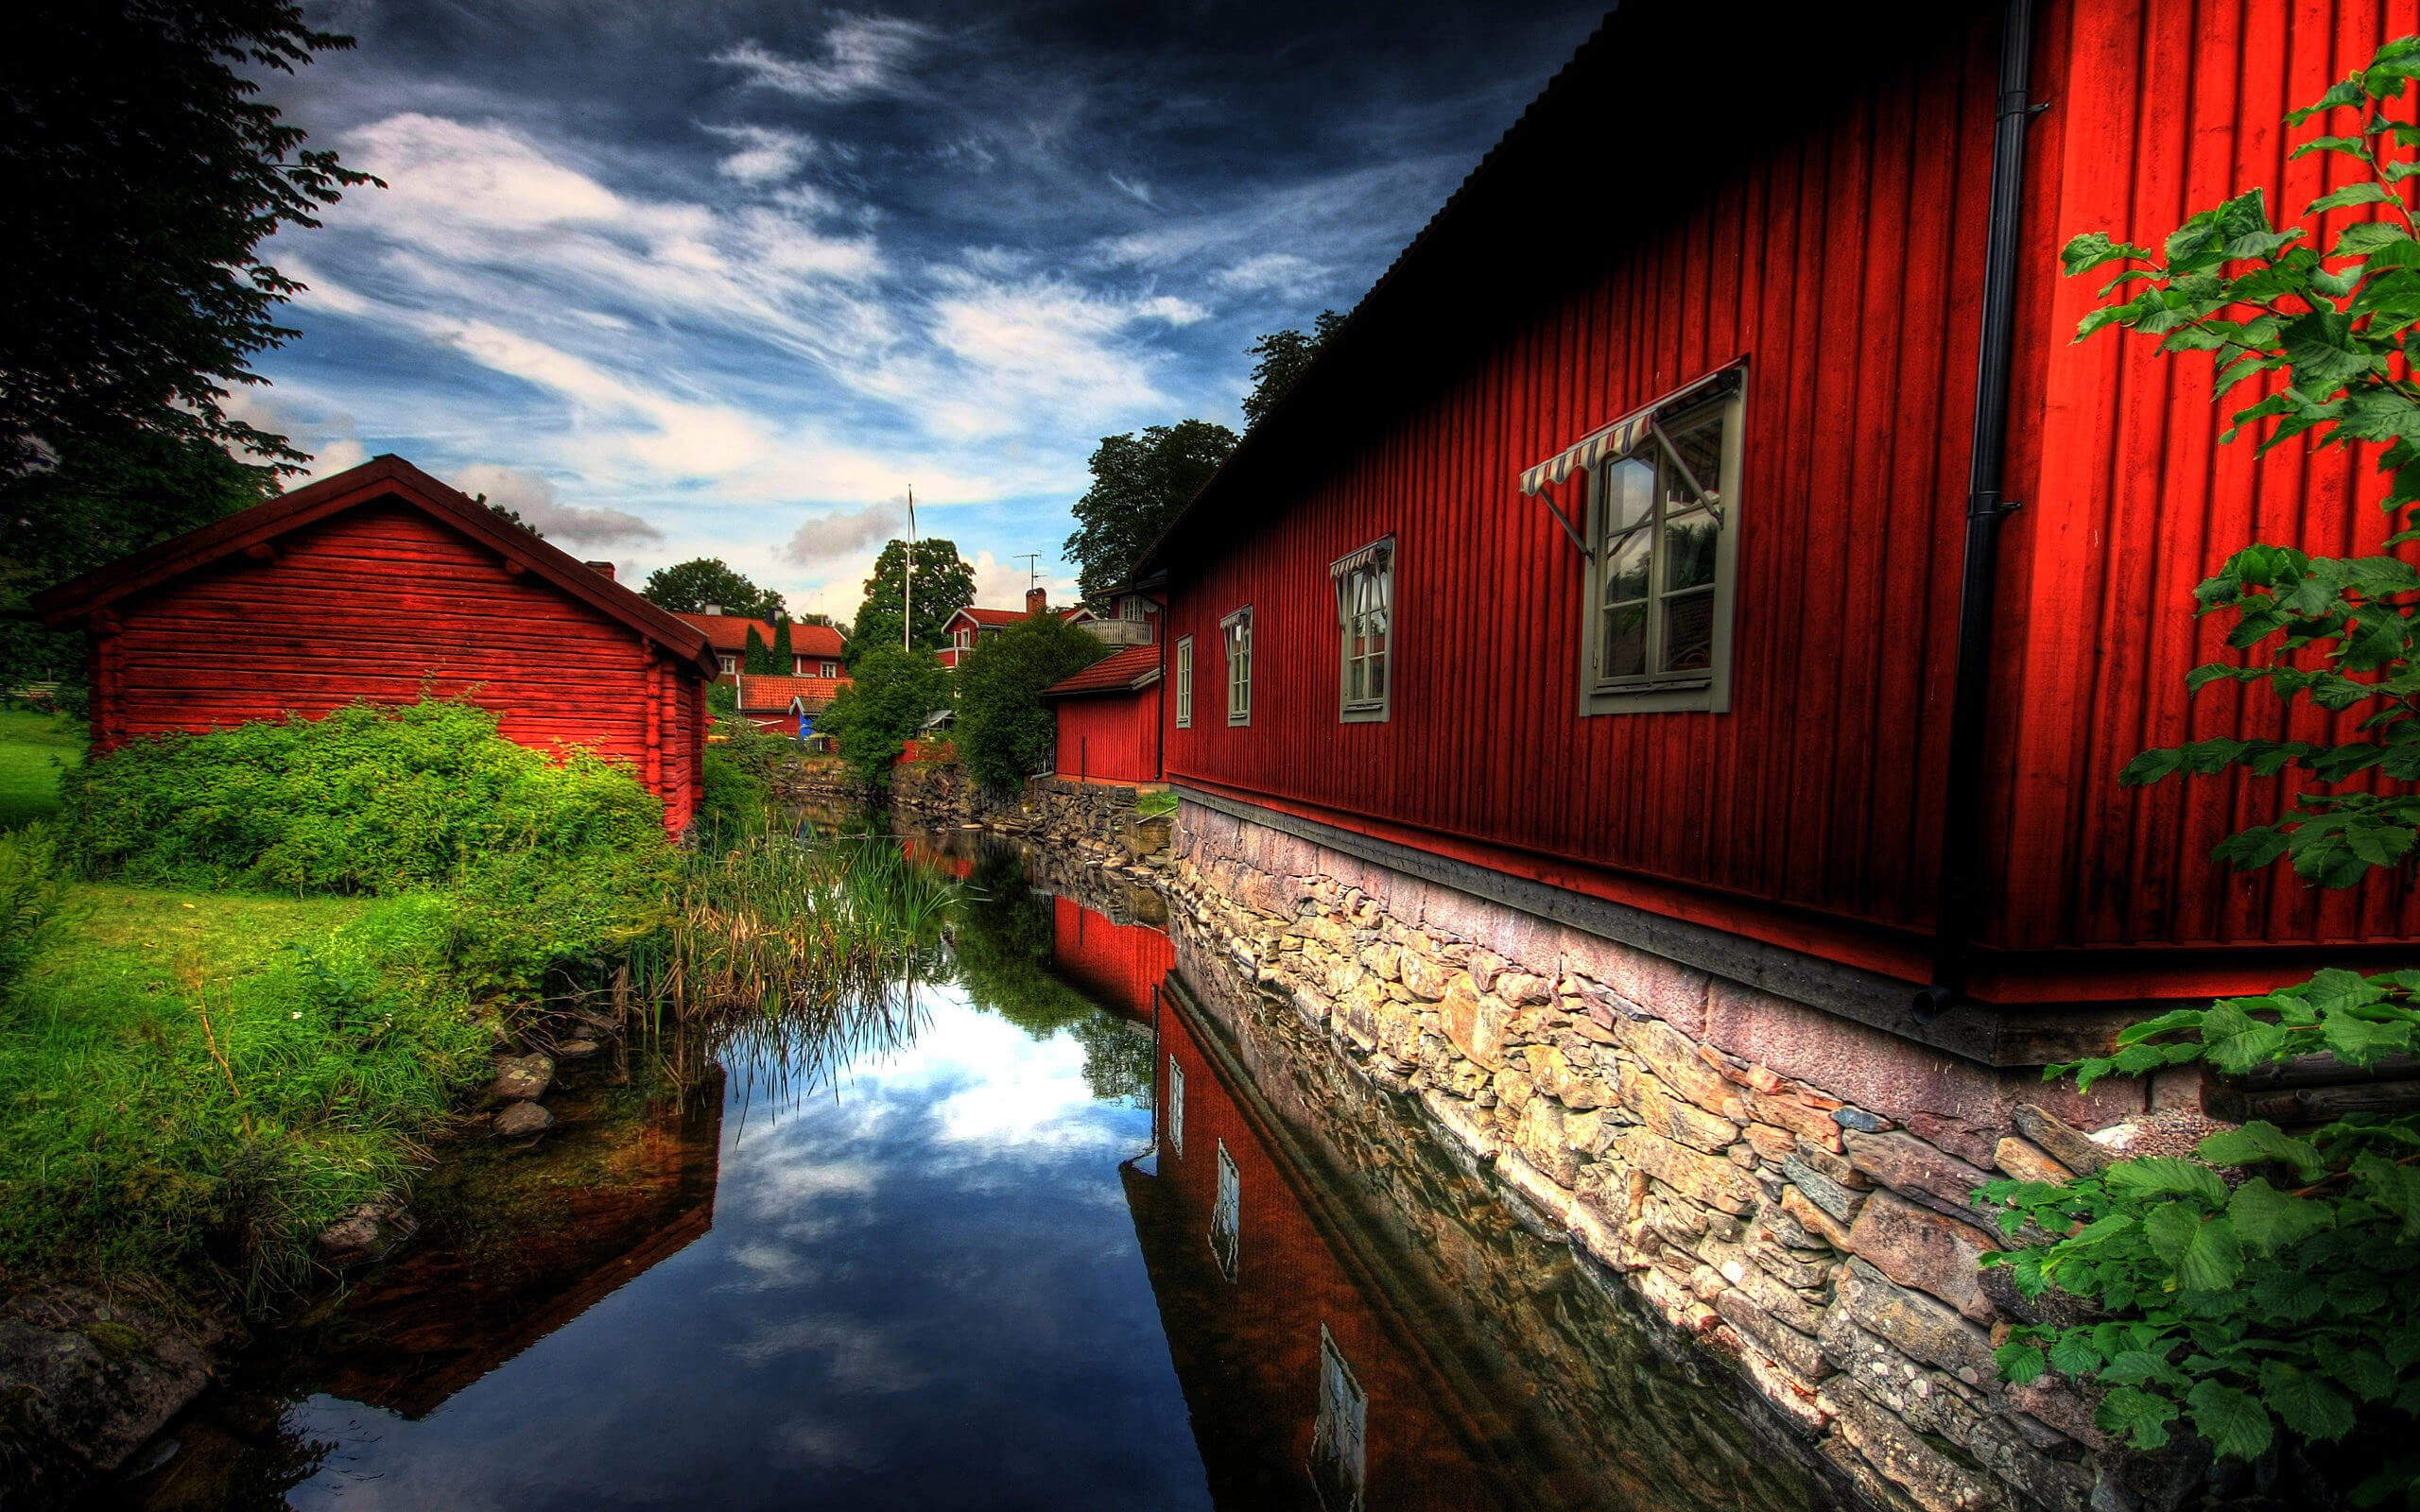 Red Village, Norberg, Sweden Wallpaper for Desktop 2560x1600